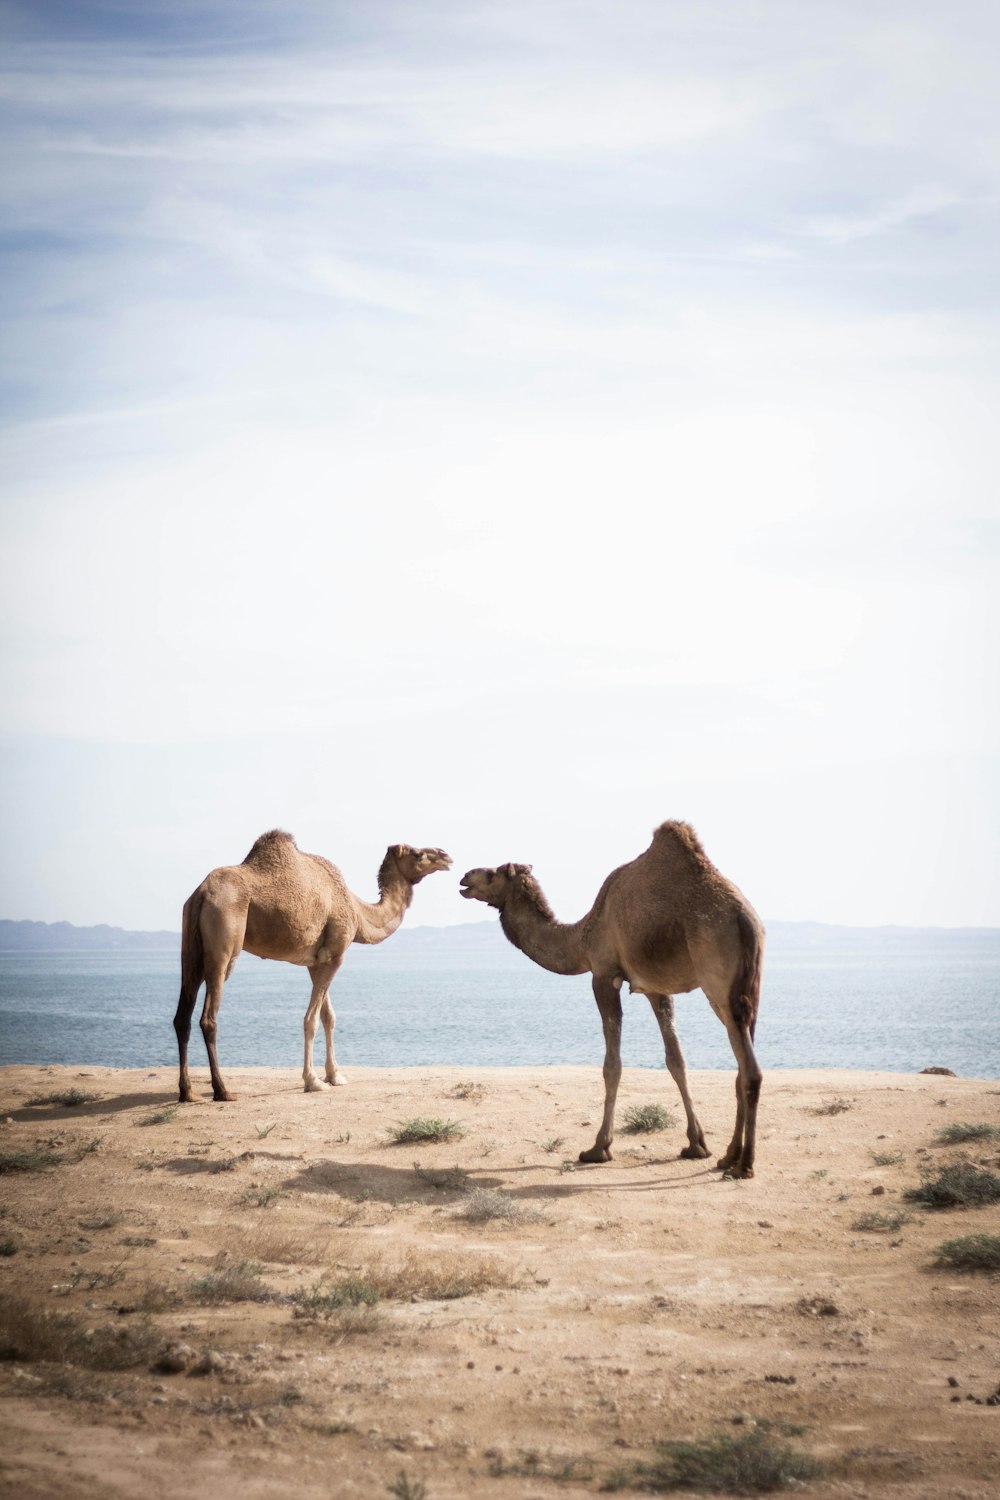 due cammelli marroni vicino allo specchio d'acqua